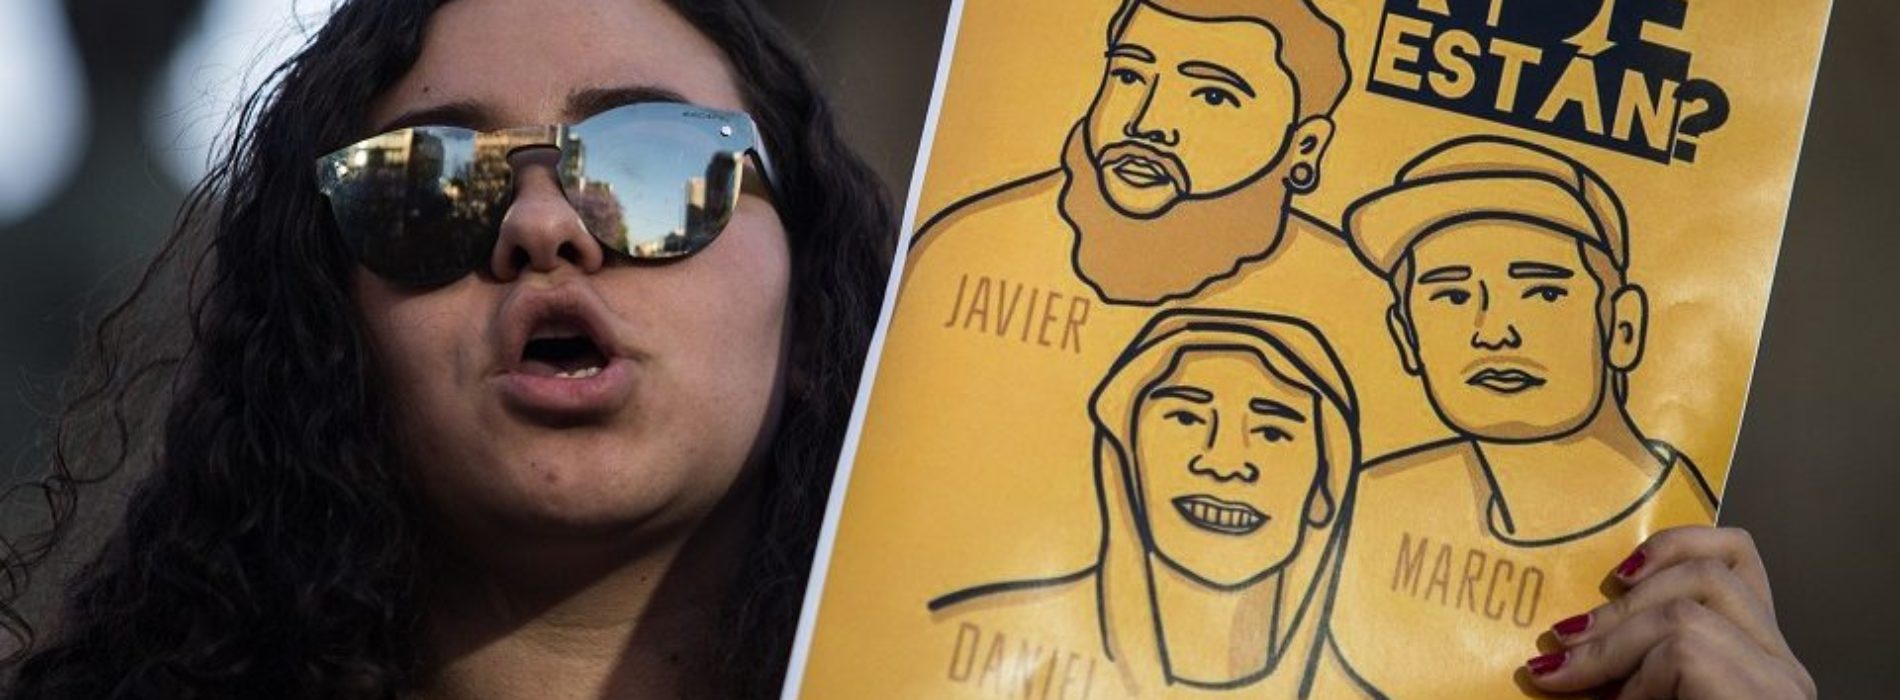 Los tres estudiantes de cine desaparecidos en Jalisco fueron
asesinados: Fiscalía